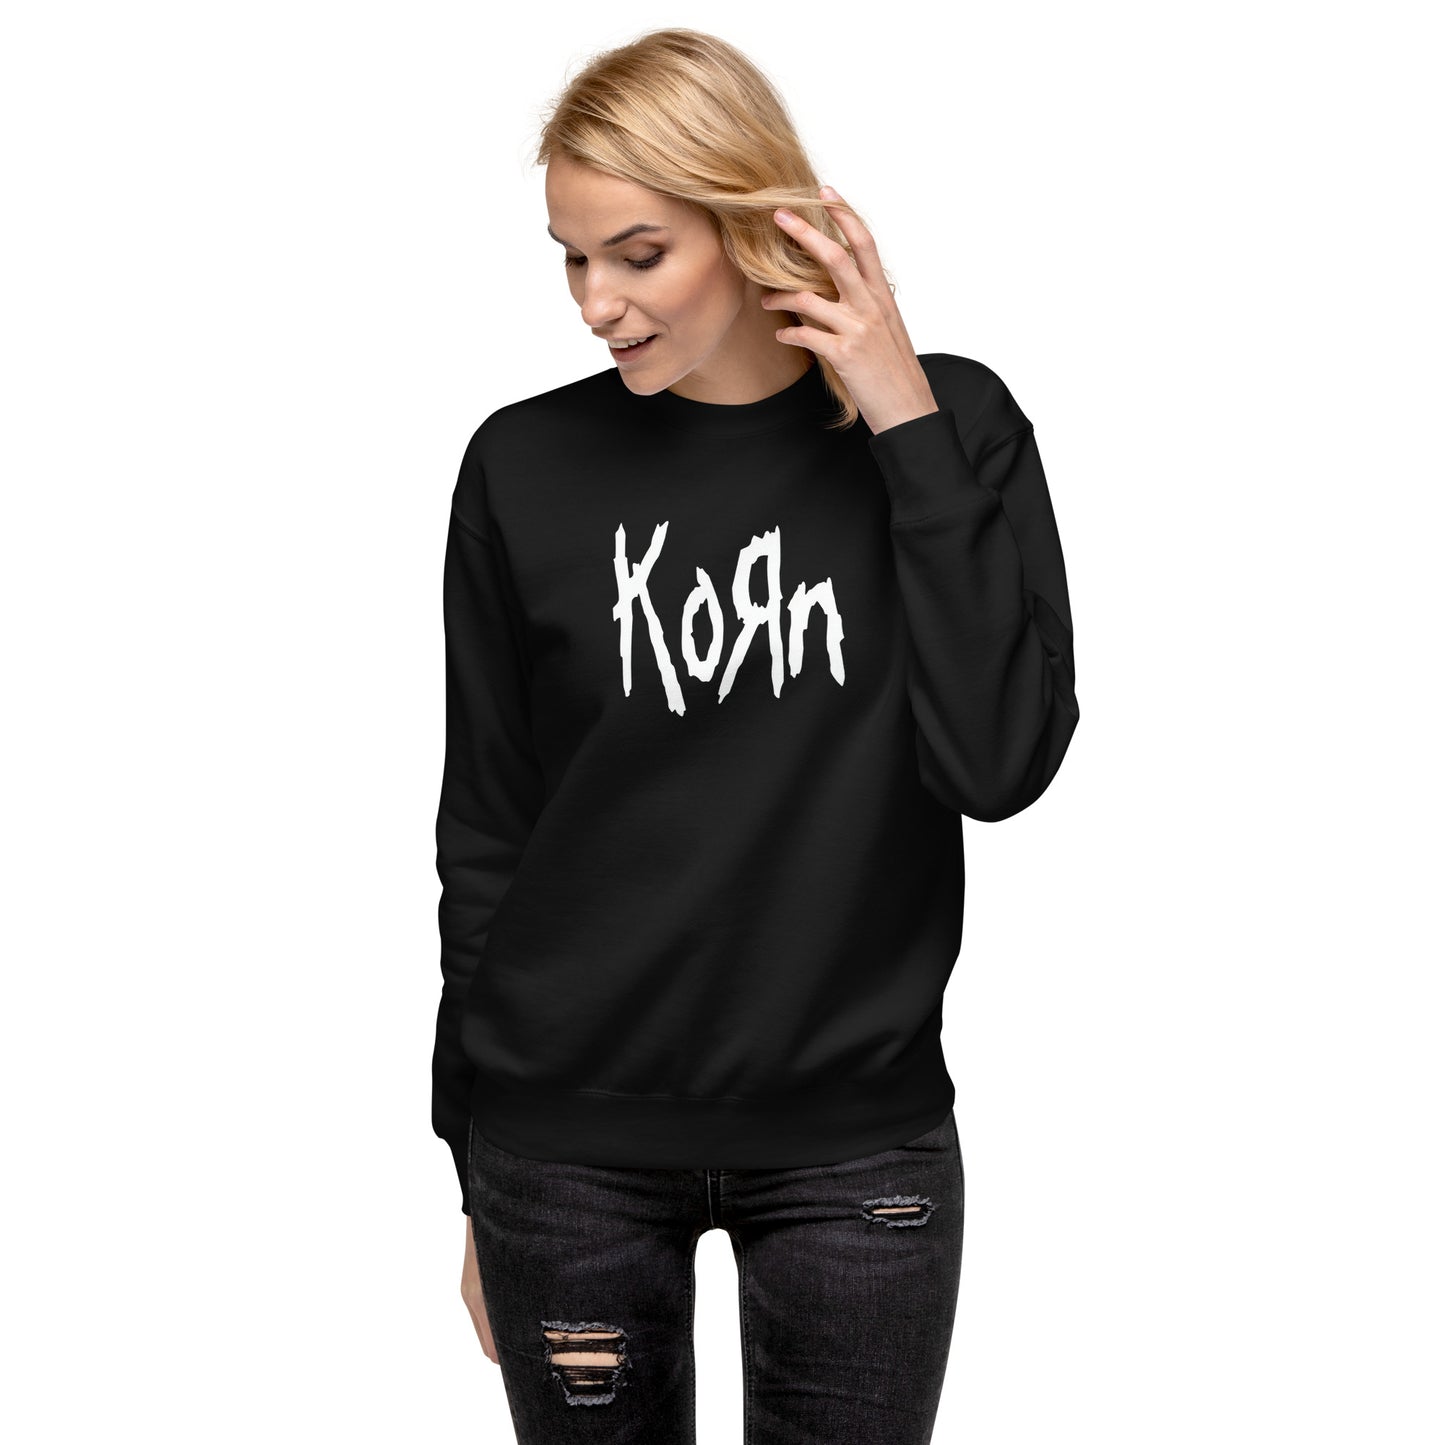 Sudadero de Korn Disponible en Superstar, la mejor tienda online para comprar tu merch favorita, la mejor Calidad, compra Ahora en Superstar!